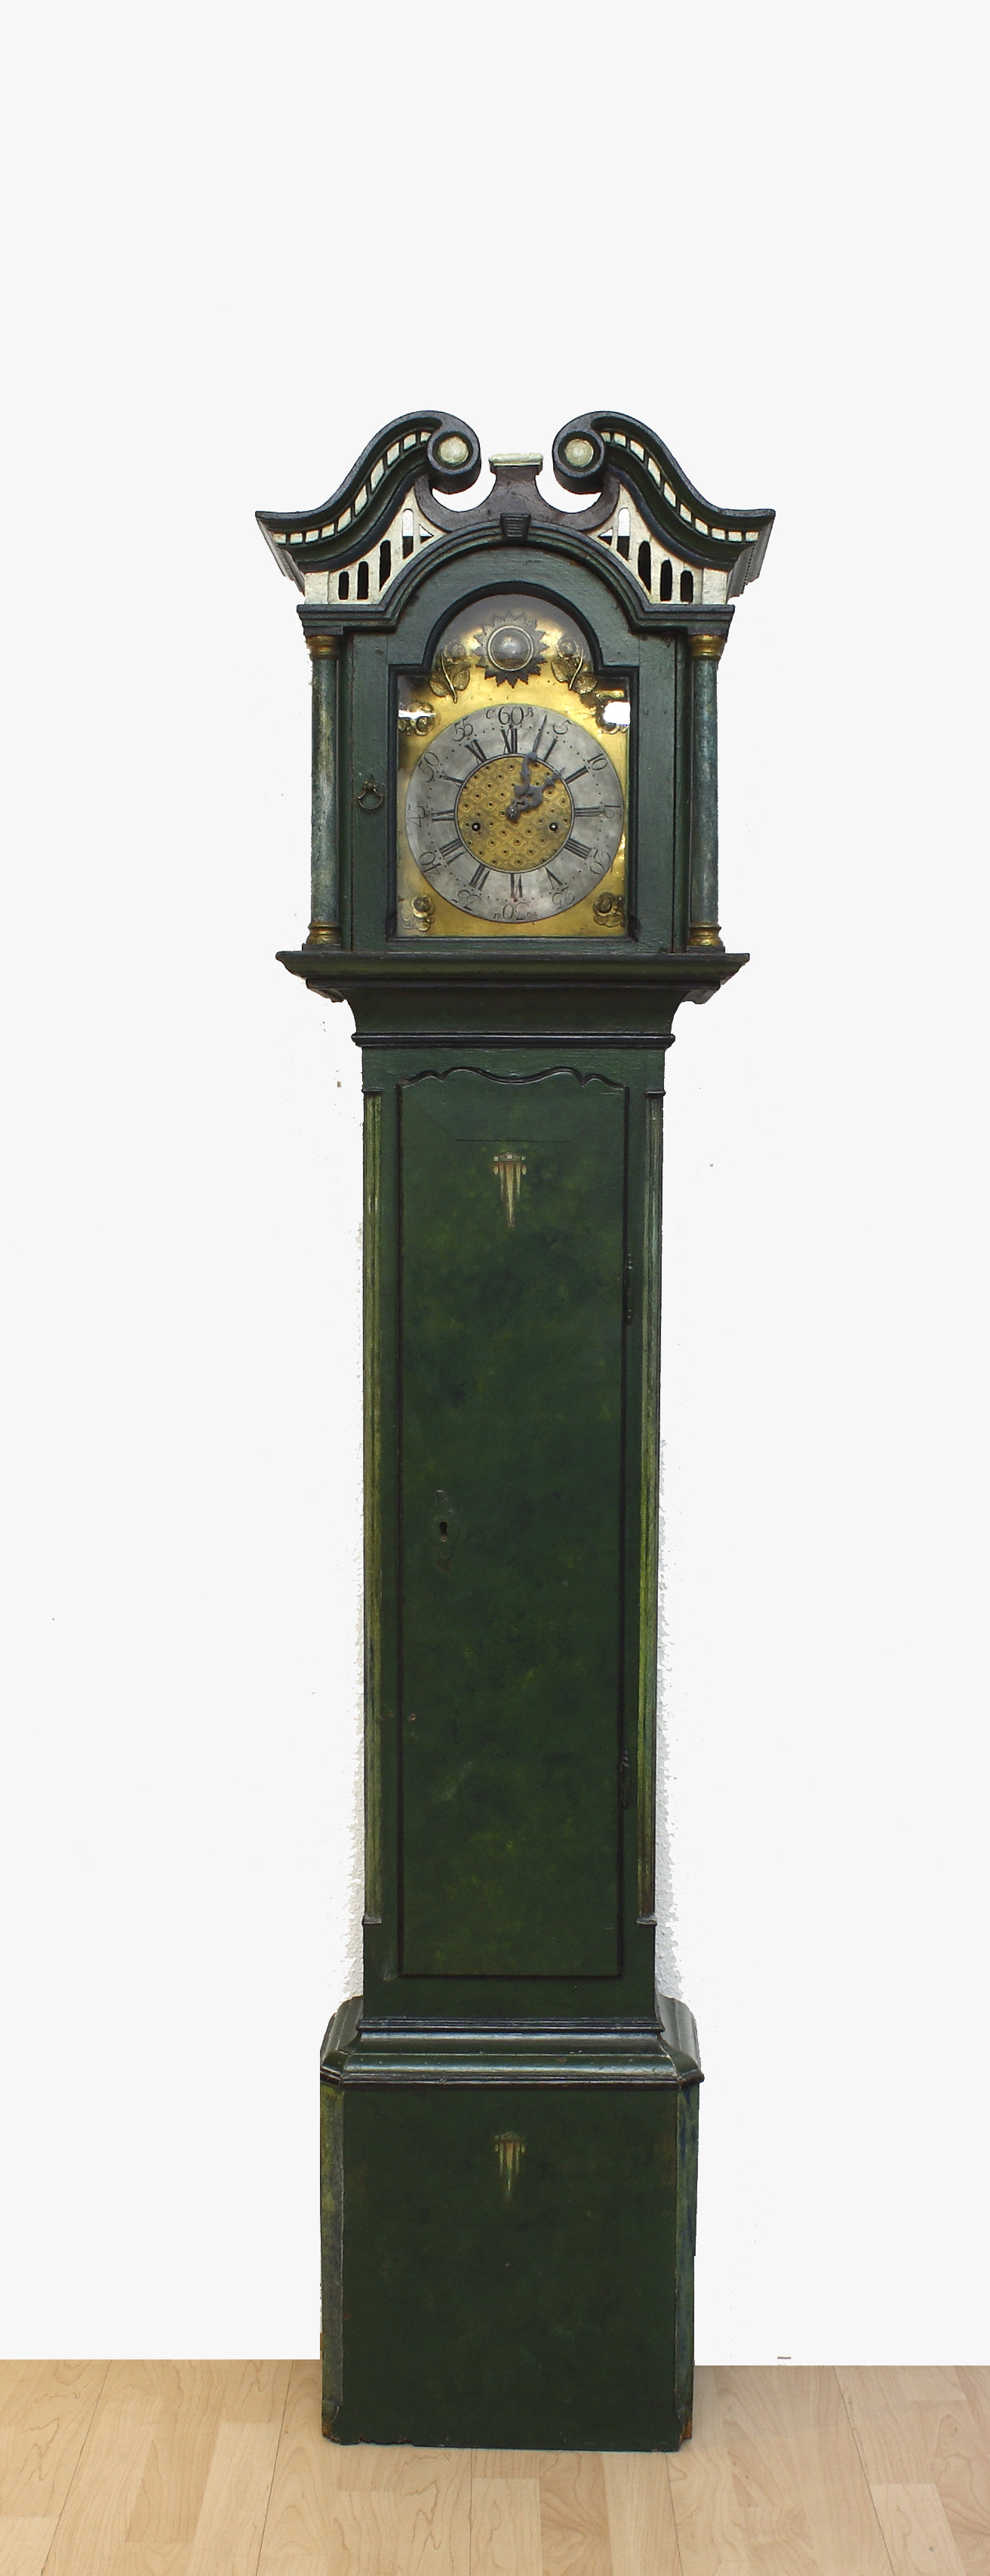 Auktionshaus Quentin Berlin Uhr  Standuhr  SÃ¼dlÃ¤ndisch  Ende 18. Jh. Gefasstes HolzgehÃ¤use  teilweise neuzeitlich Ã¼bergangen. Messingfront mit aufgelegtem Rosendekor.